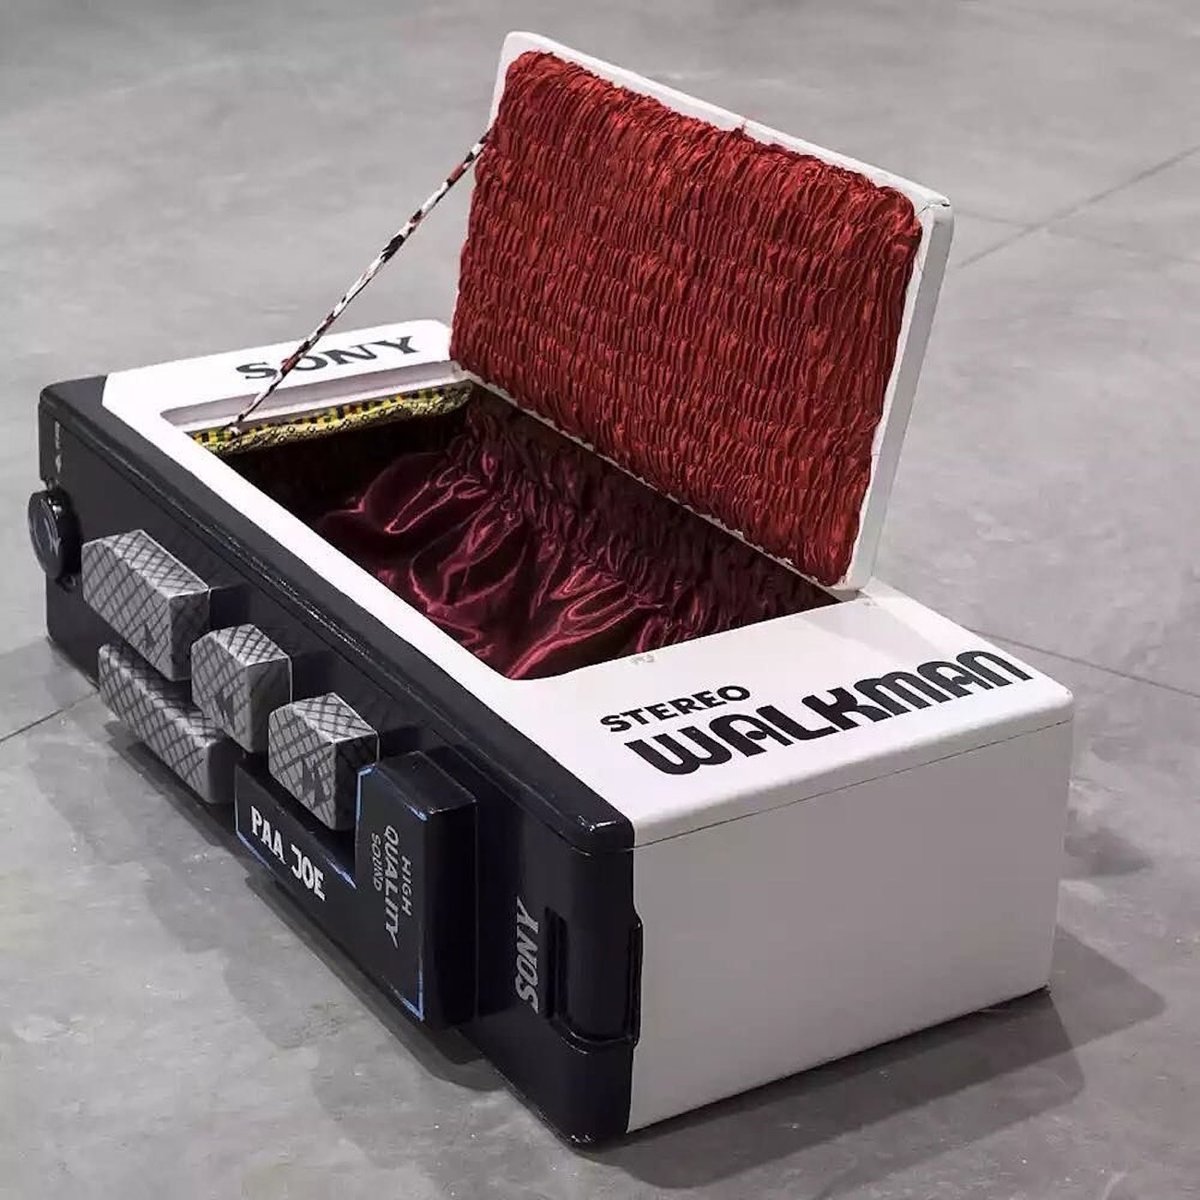 a human-sized coffin shaped like a Sony Walkman